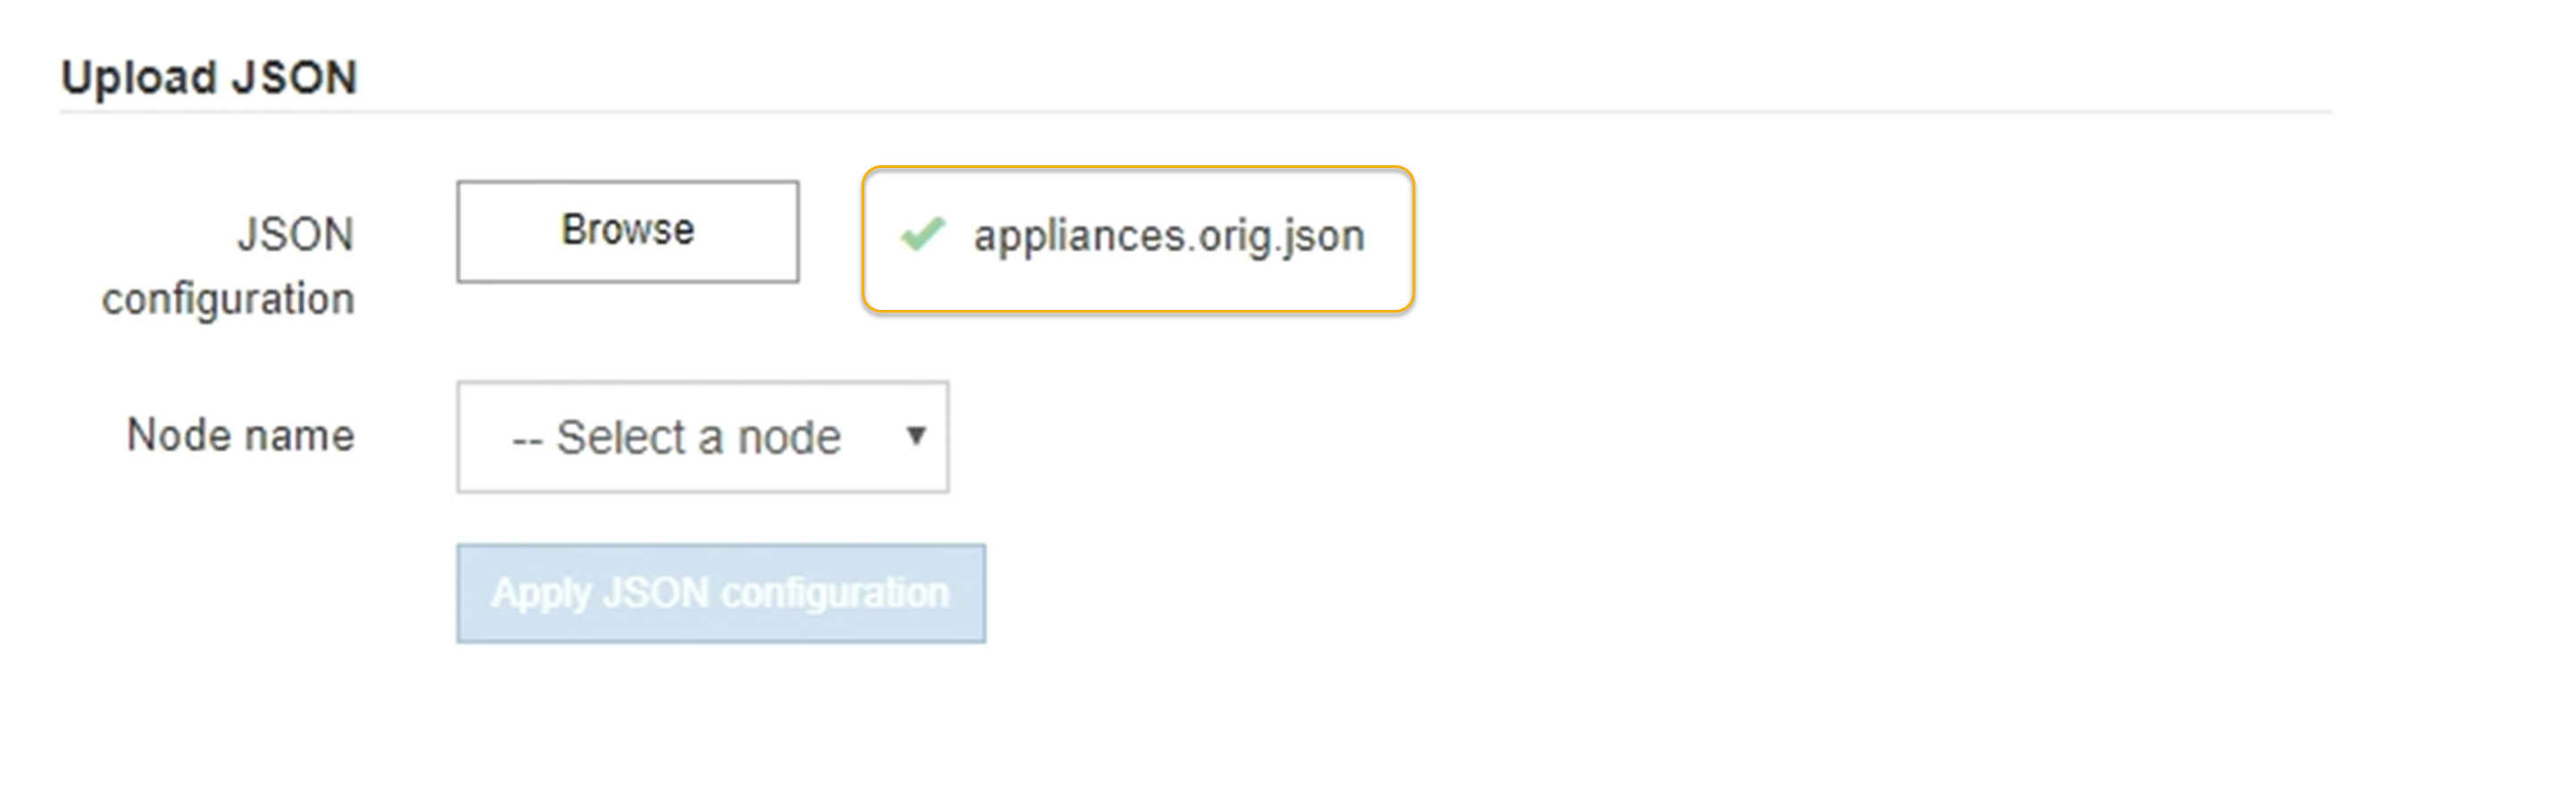 已上傳更新應用裝置組態Json